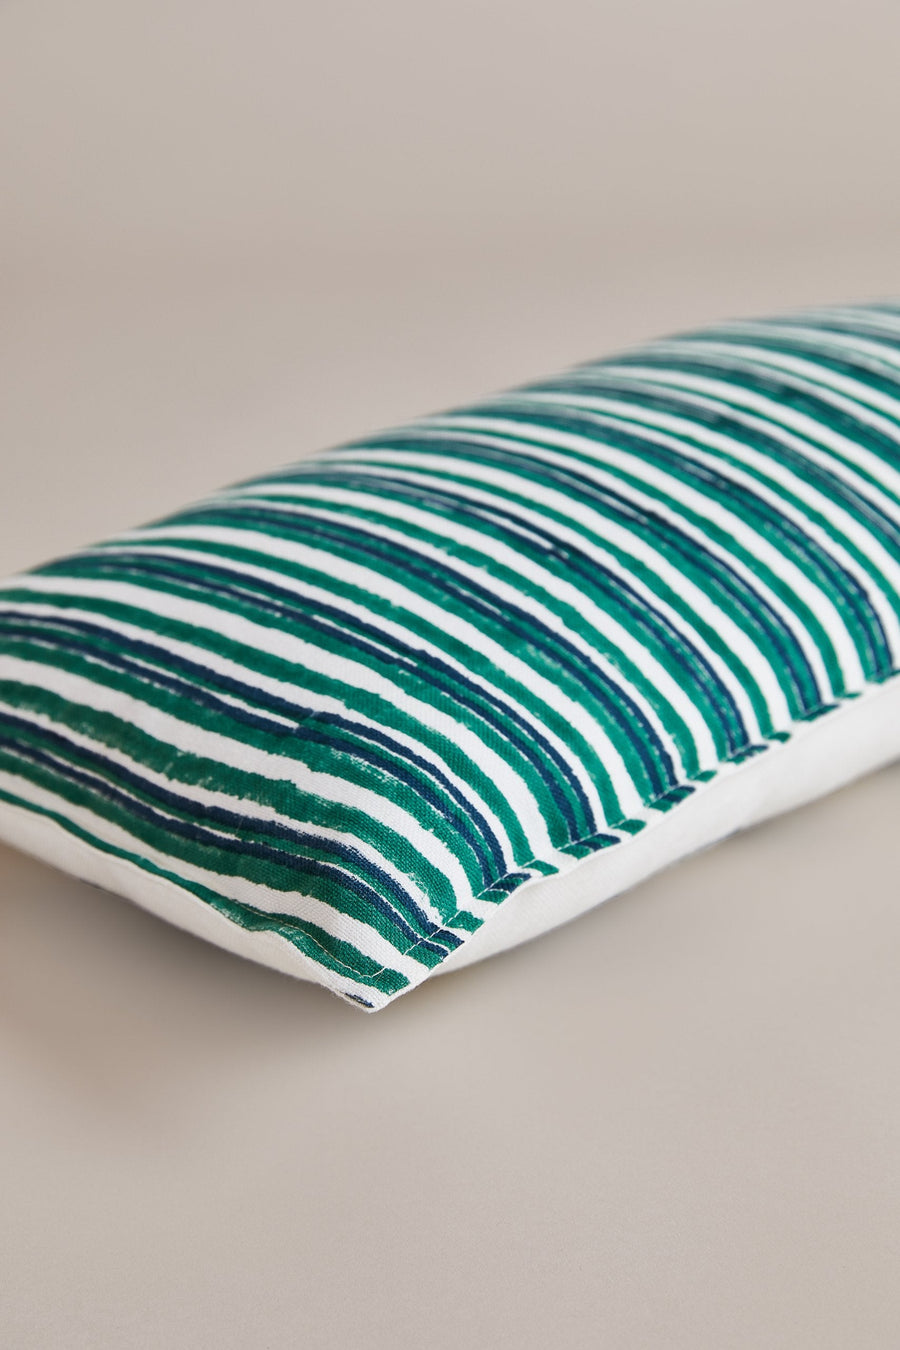 Udaipur Green Cushion 30x60cm